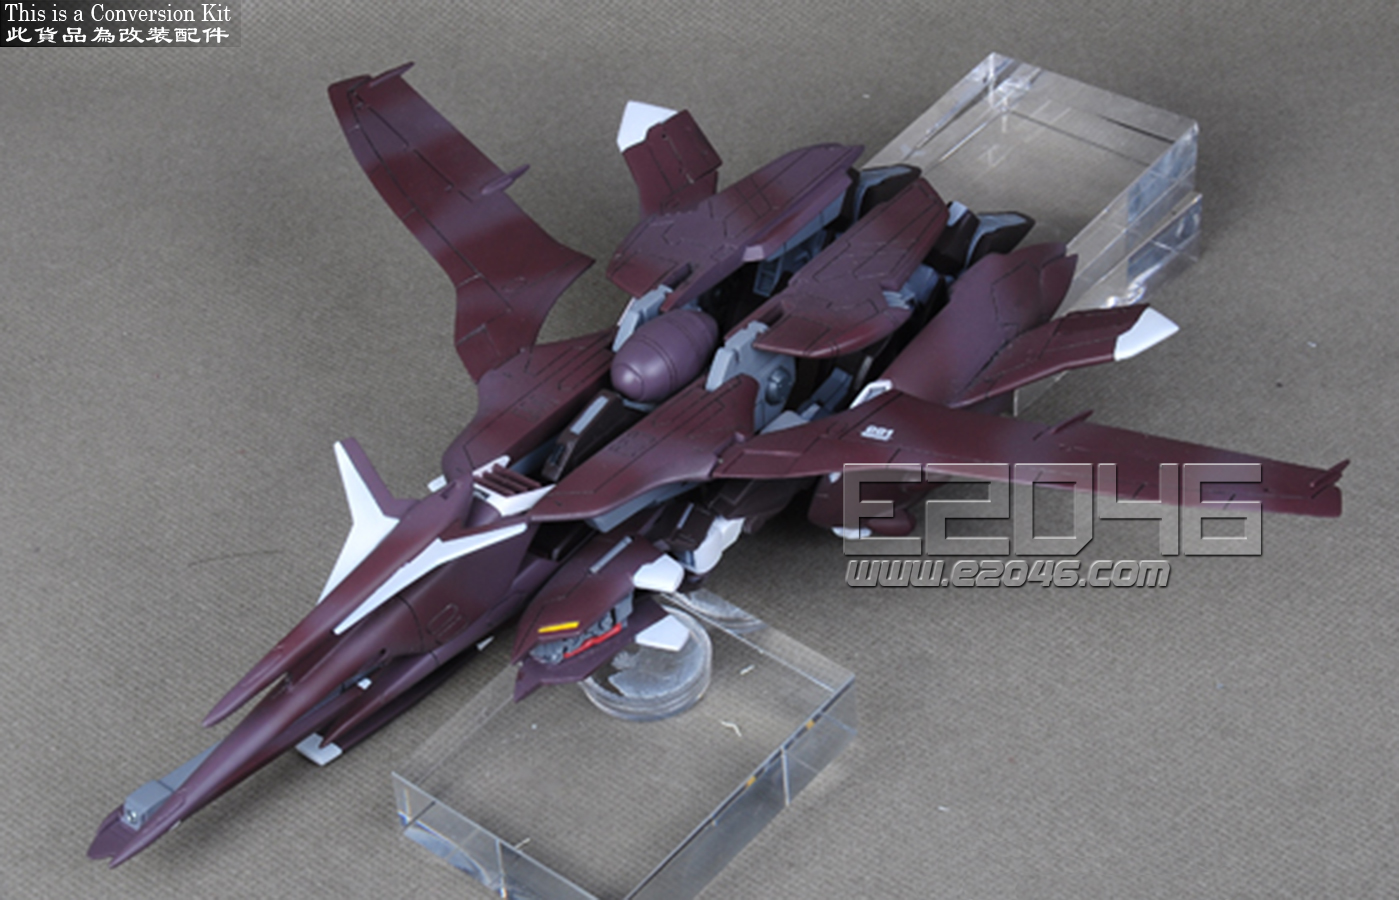 GNW-001/hs-T01 Gundam Throne Eins Turbulenz conversion parts